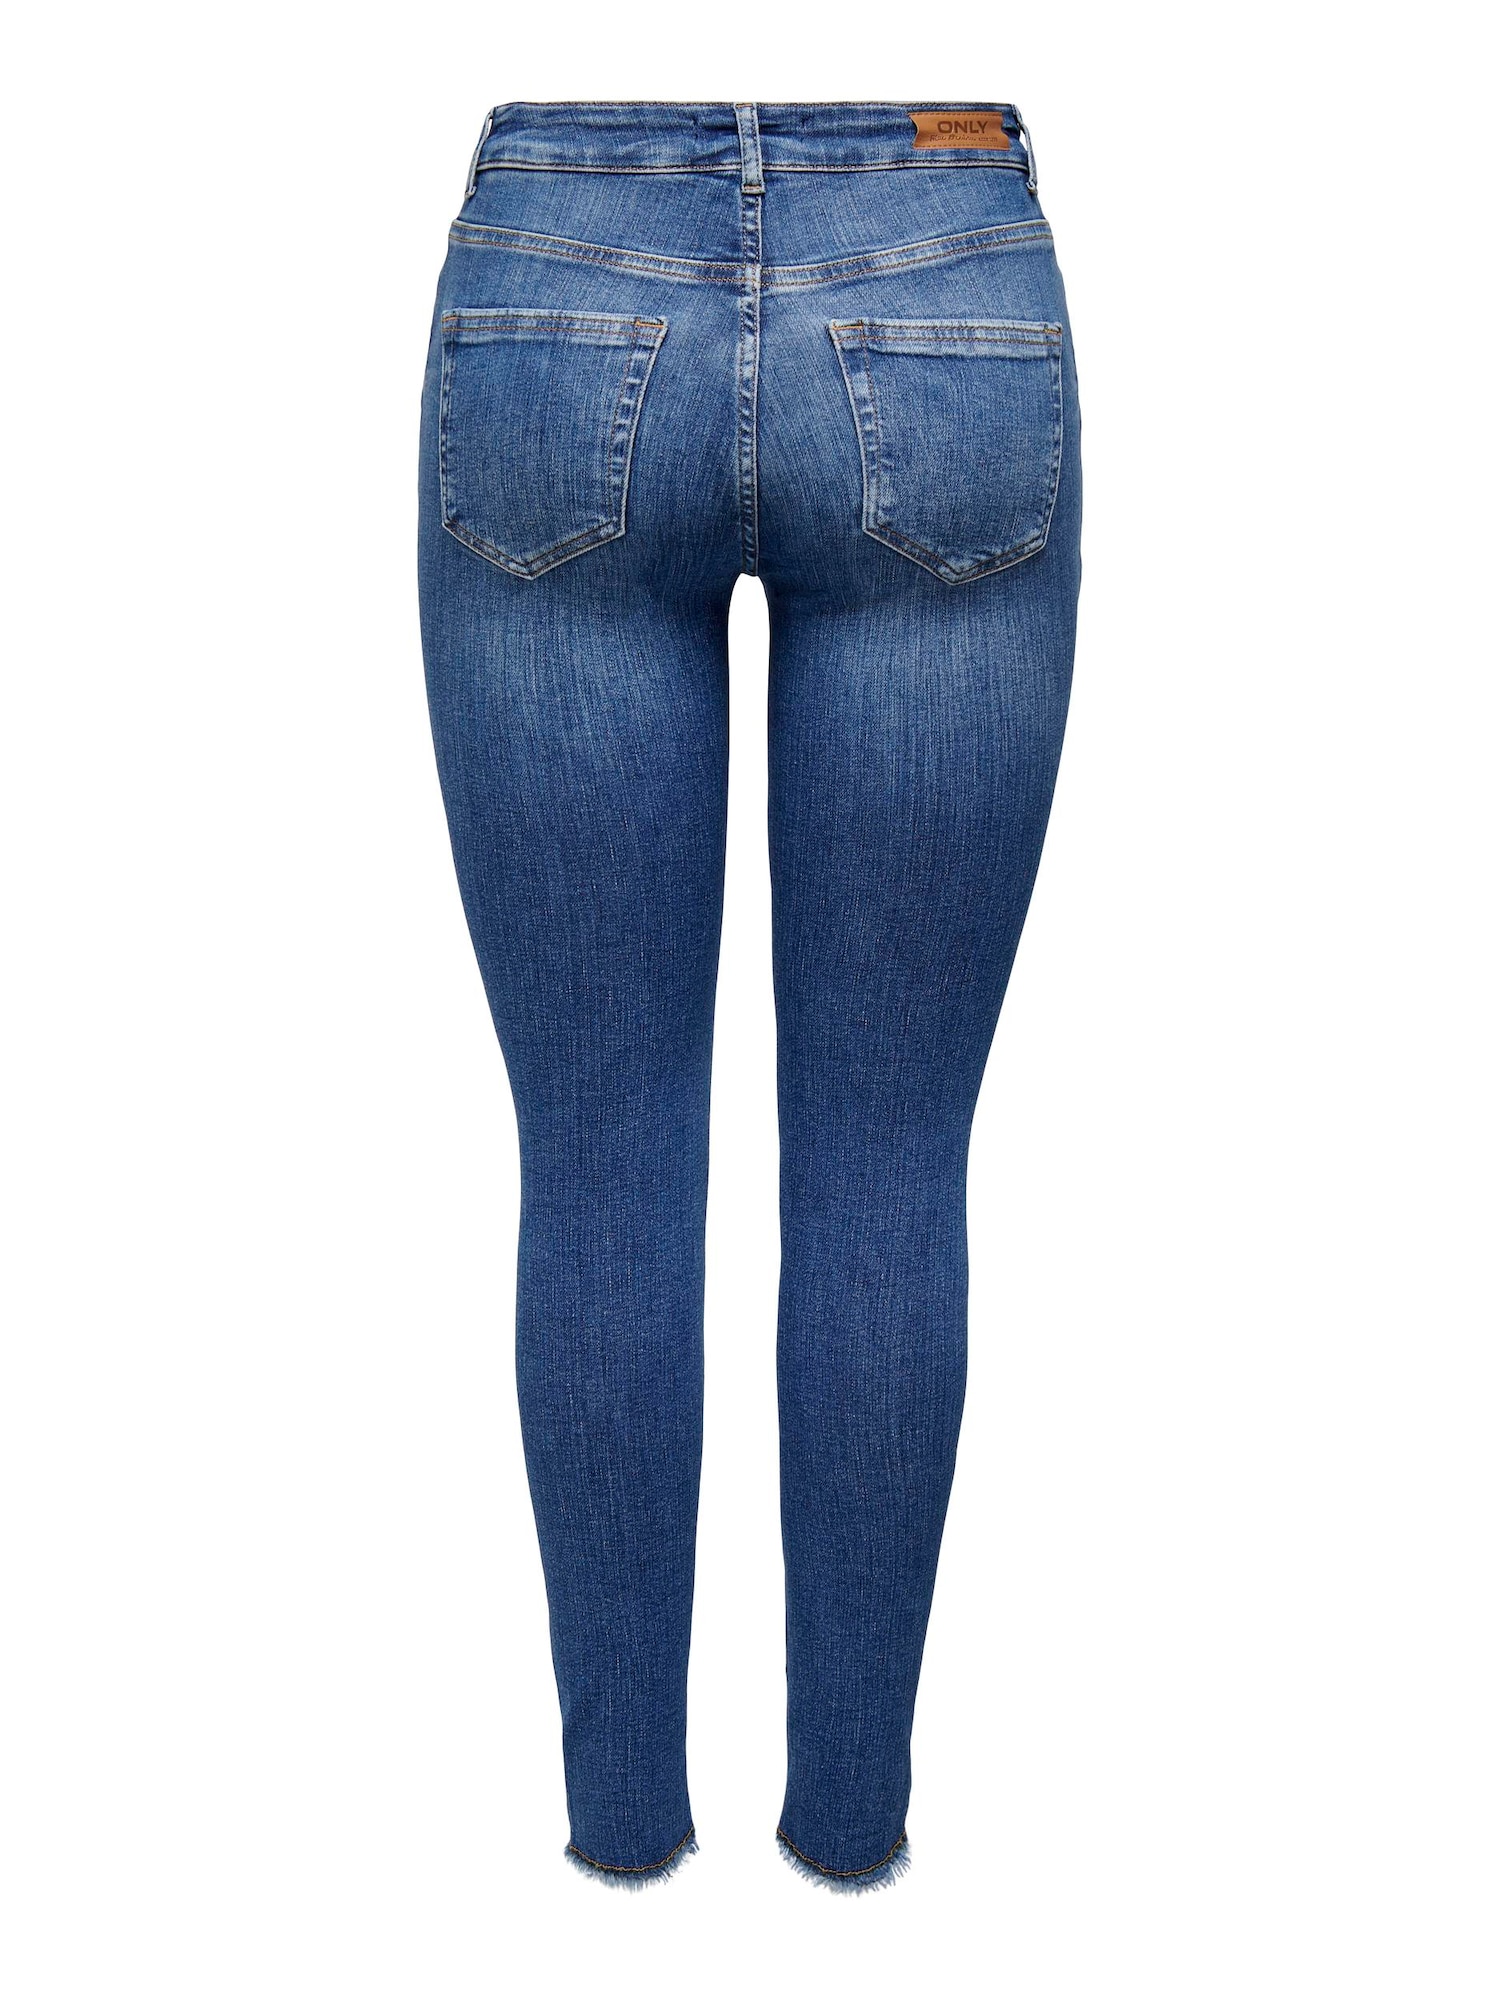 Jeans 'Blush' von Only